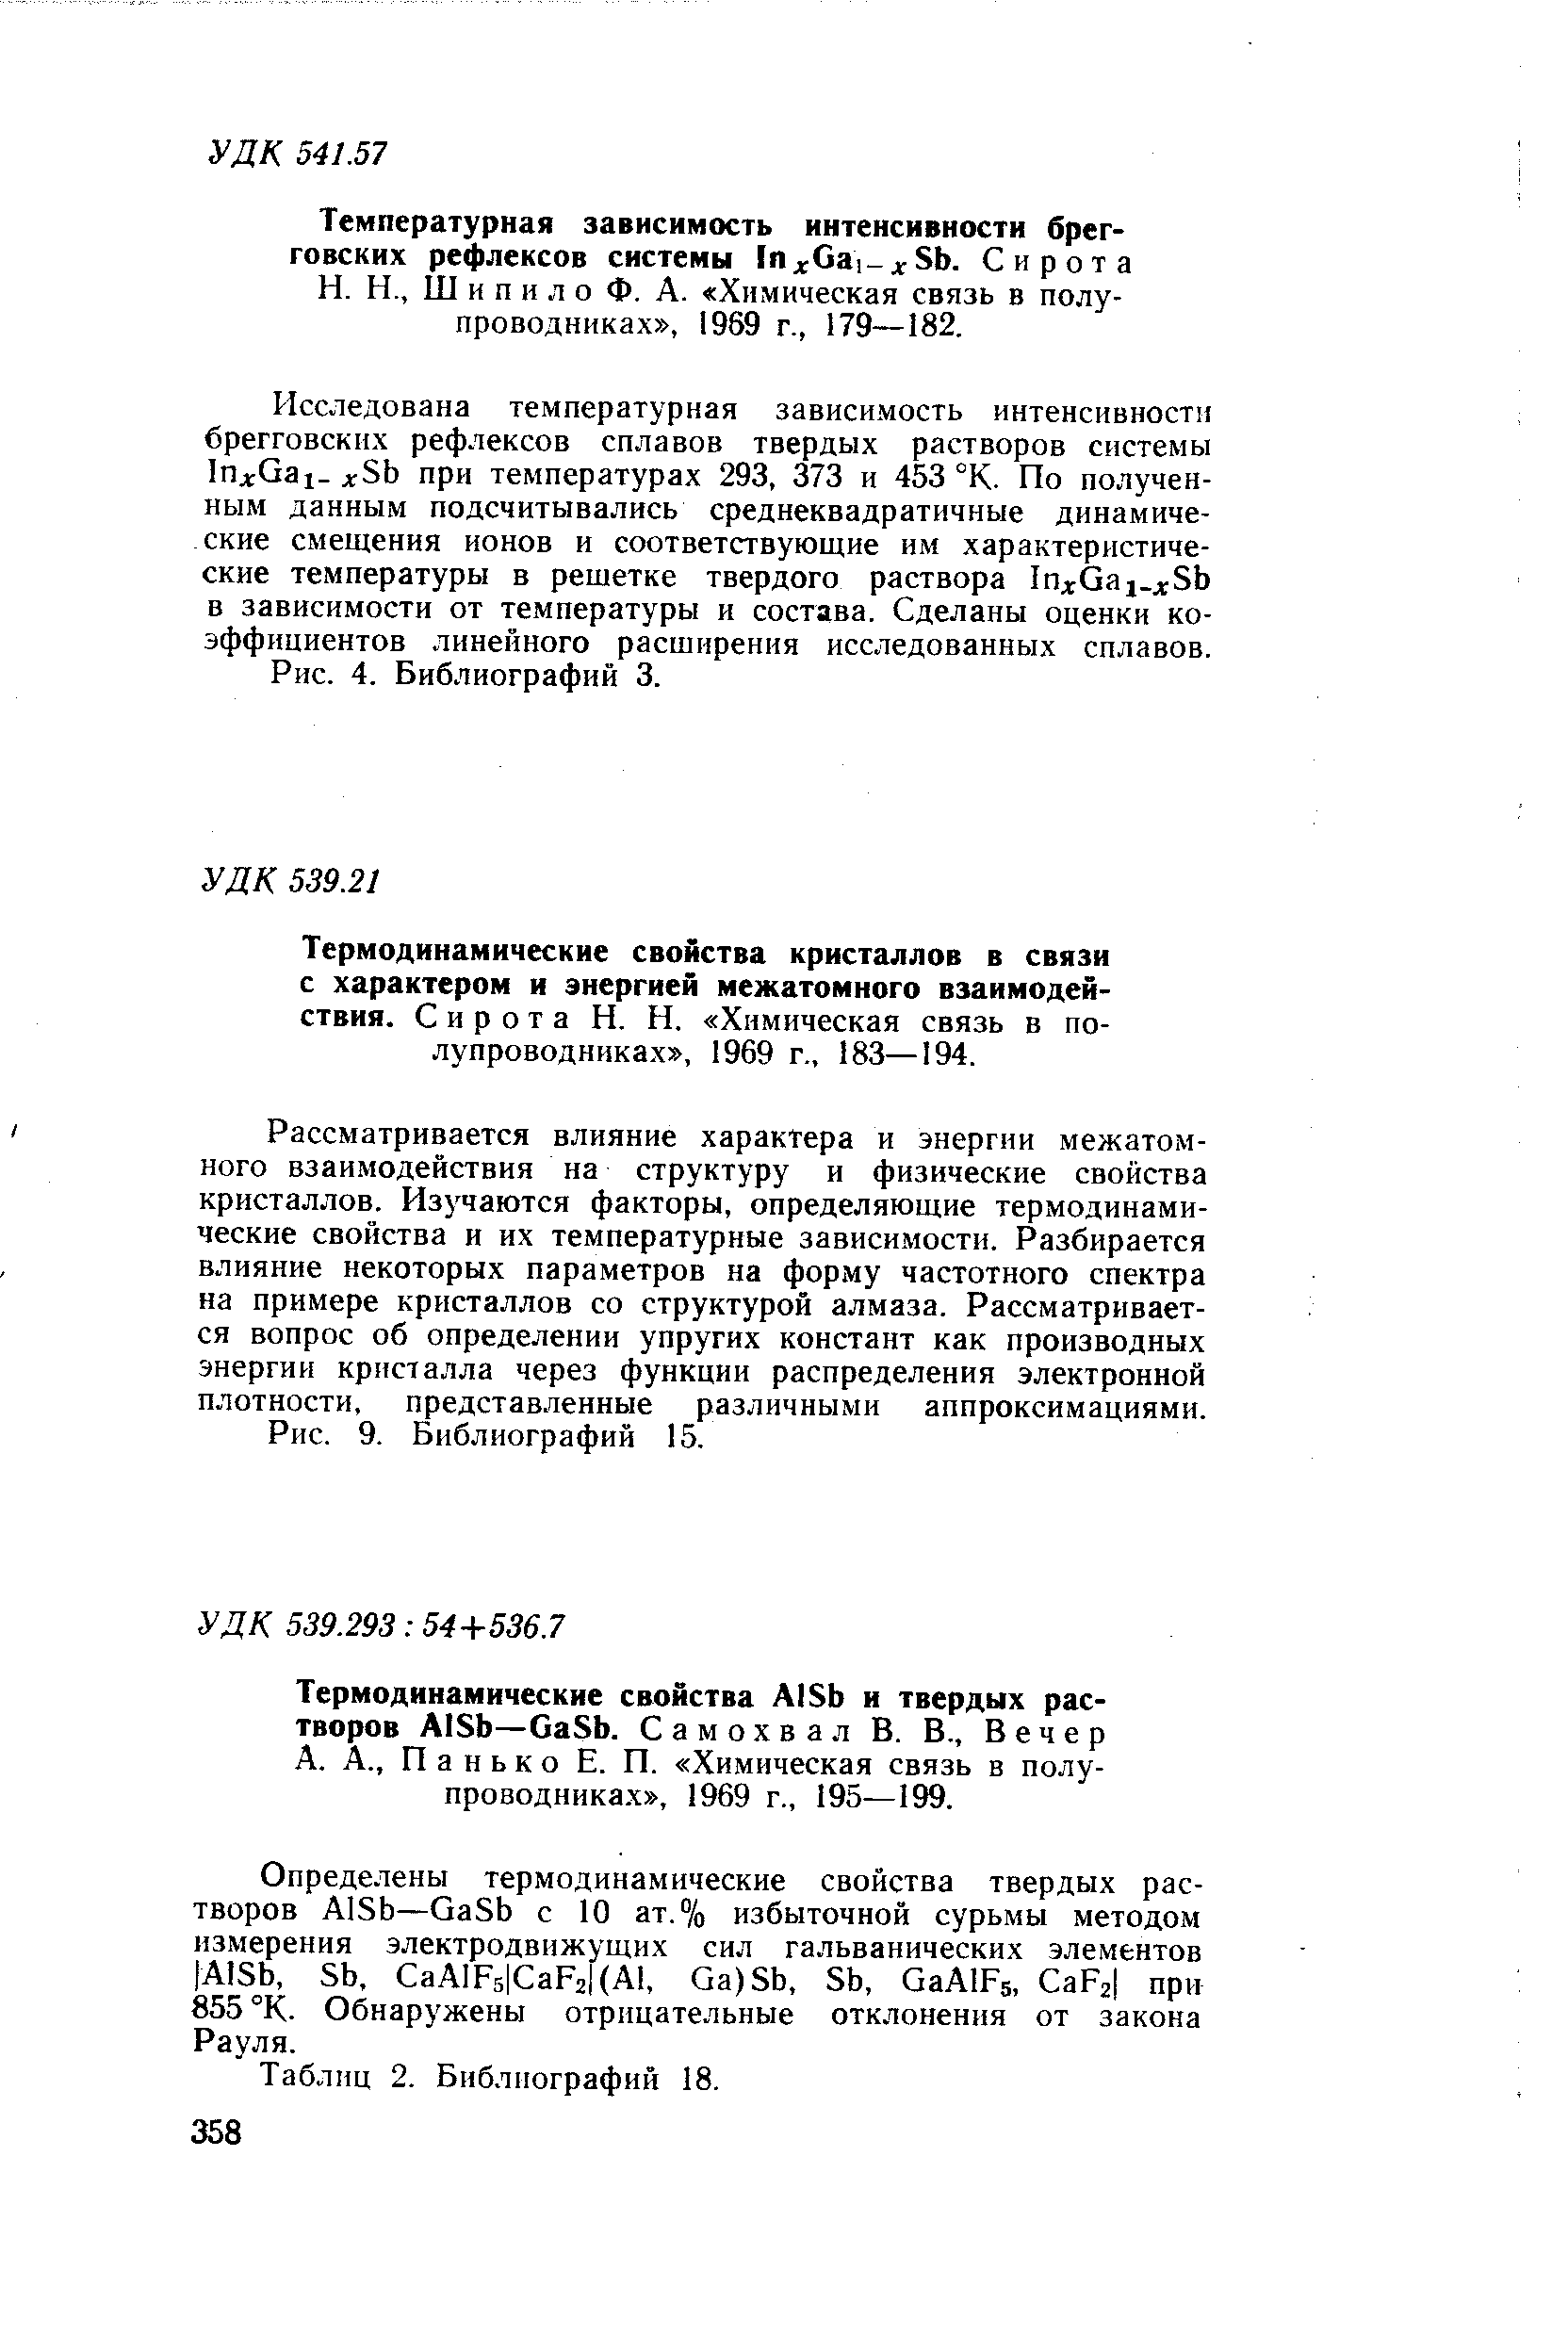 Ш и п и л о Ф. А. Химическая связь в полупроводниках , 1969 г., 179—182.